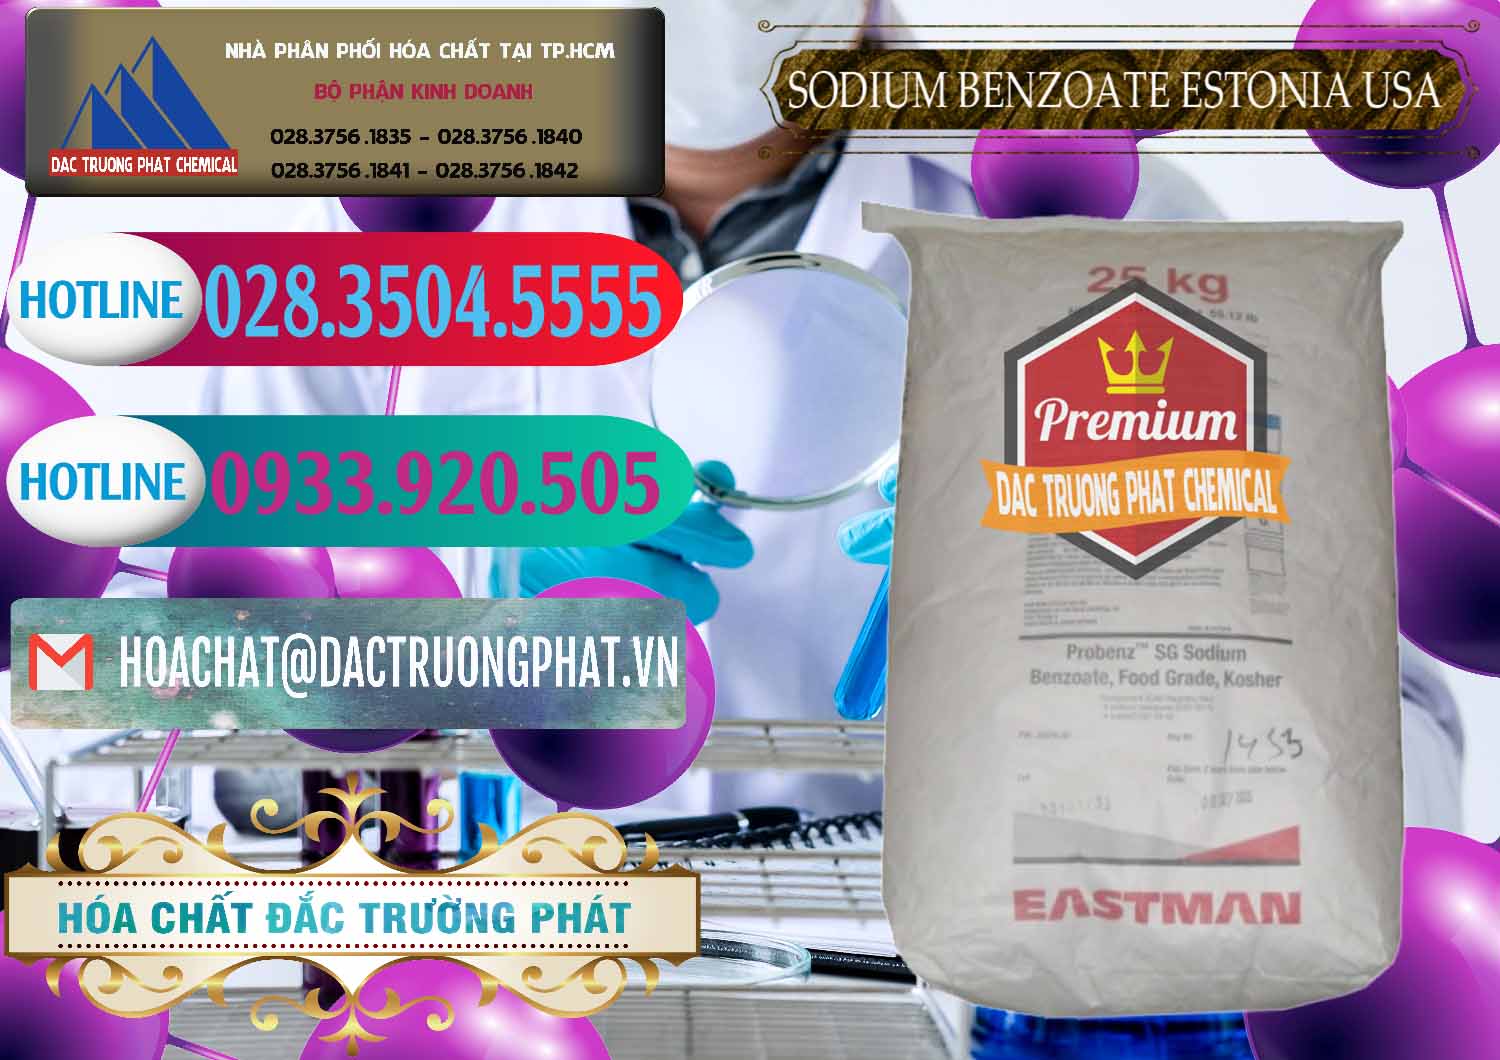 Nơi cung ứng & bán Sodium Benzoate - Mốc Bột Estonia Mỹ USA - 0468 - Đơn vị kinh doanh ( cung cấp ) hóa chất tại TP.HCM - truongphat.vn